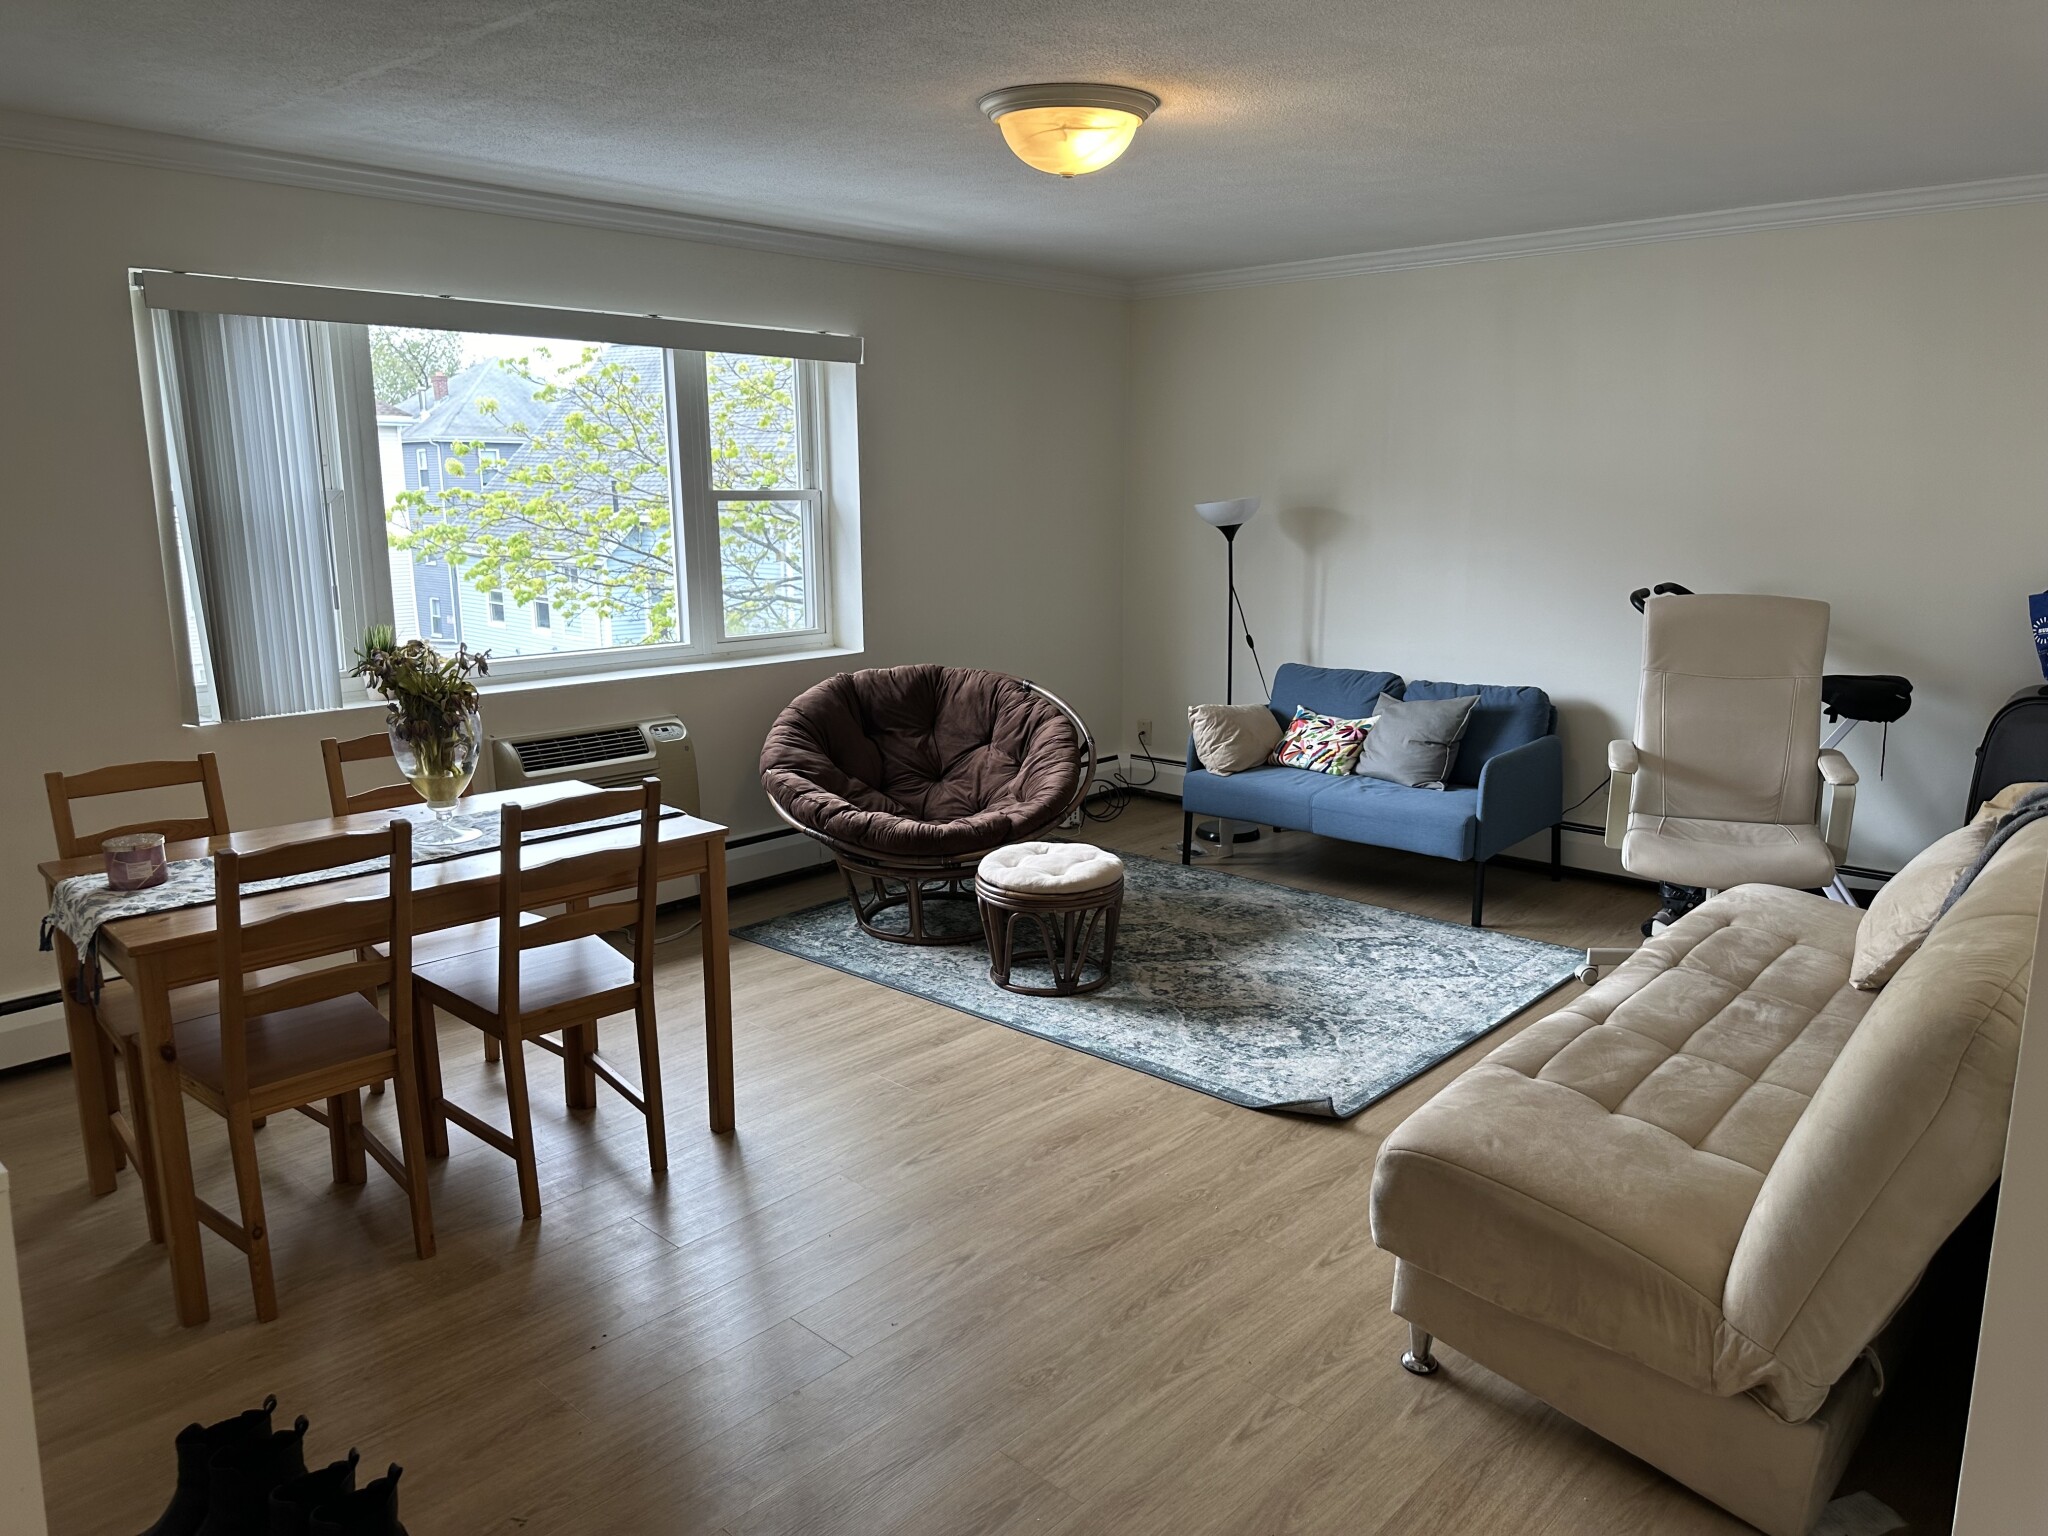 Photos of apartment on Westford St.,Boston MA 02134